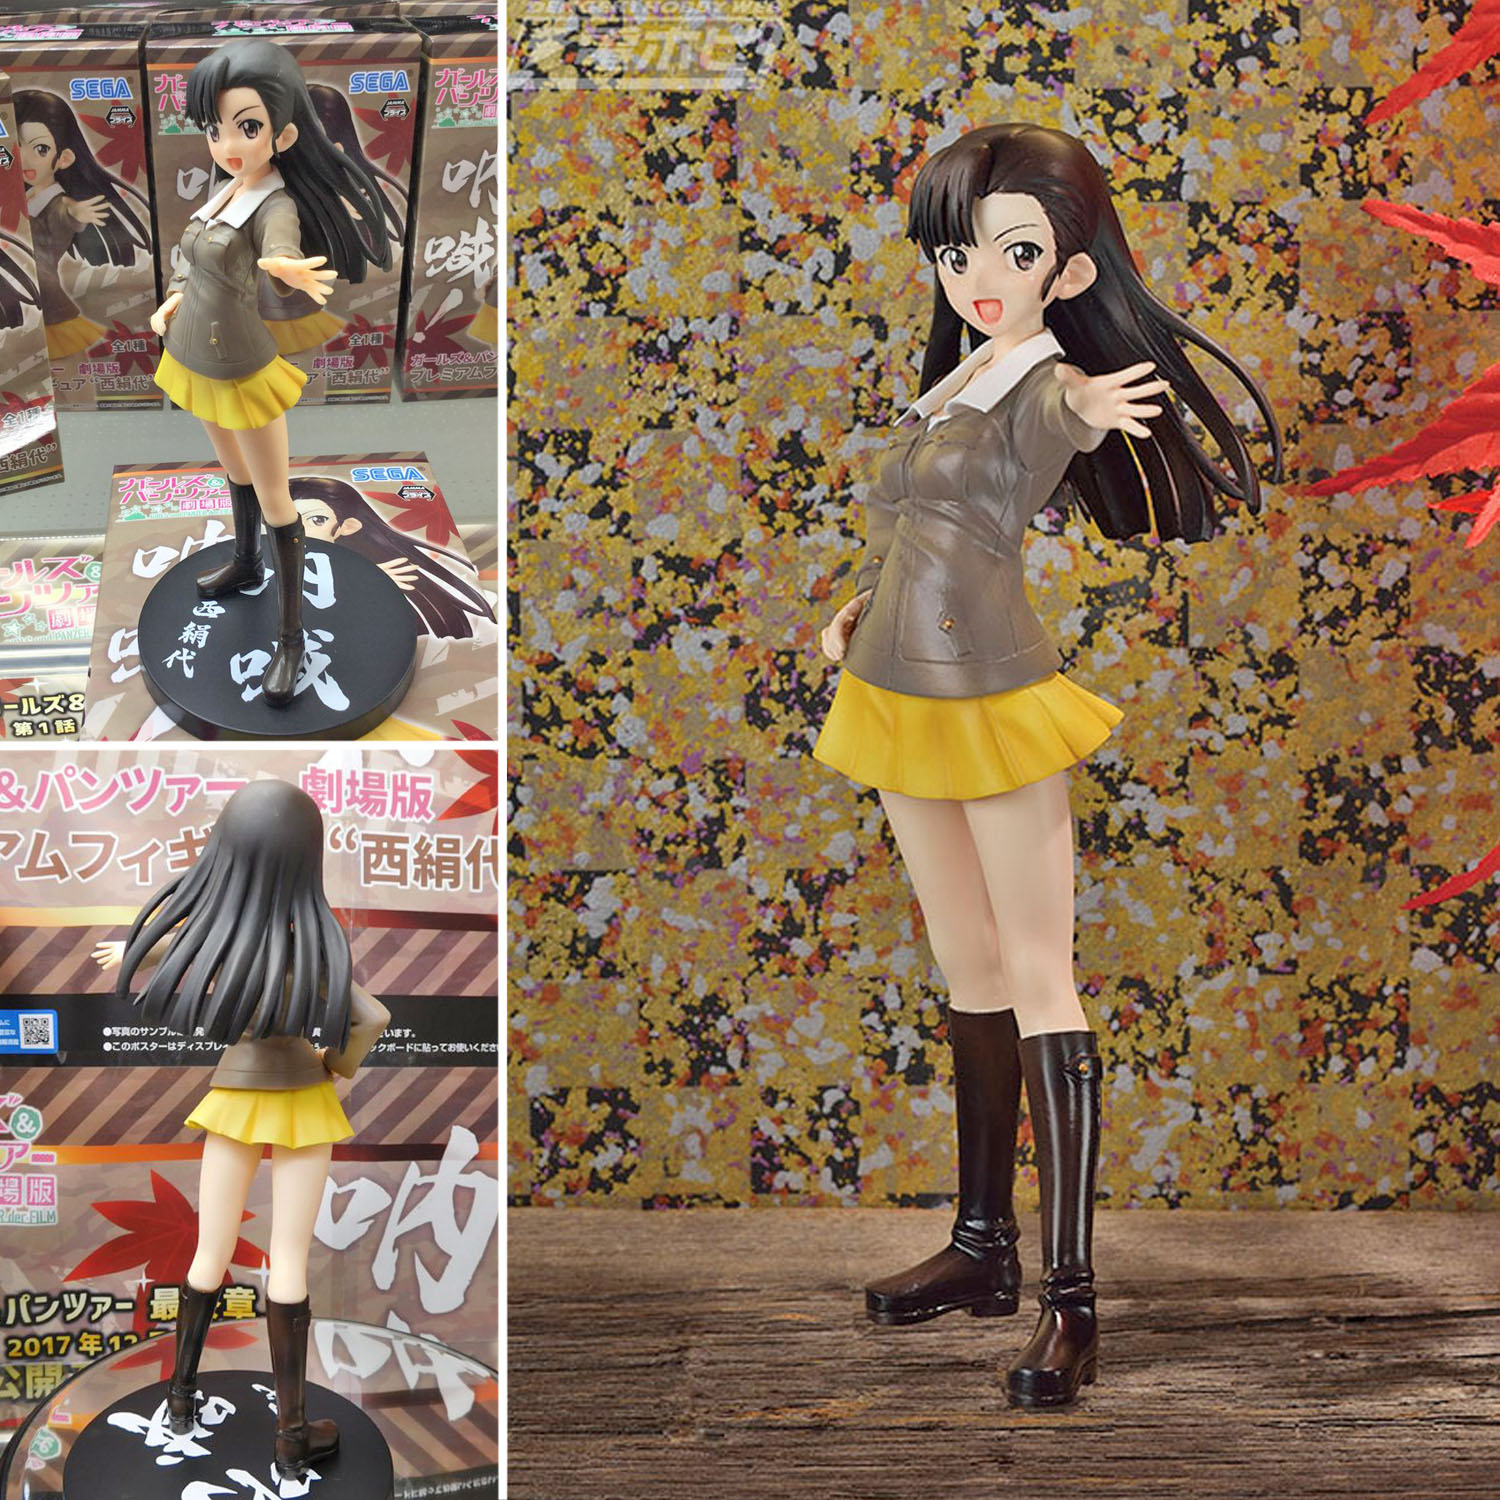 Model โมเดล งานแท้ 100% Sega จากการ์ตูนเรื่อง Girls Und Panzer สาวปิ๊งซิ่งแทงค์ สาวน้อยน่ารัก กับรถถังทหารศึก Kinuyo Nishi นิชิ คินุโยะ ชุดนักเรียน Ver Original from Japan Figure ฟิกเกอร์ Anime อนิเมะ การ์ตูน มังงะ คอลเลกชัน สั่งและนำเข้าจากญี่ปุ่น manga